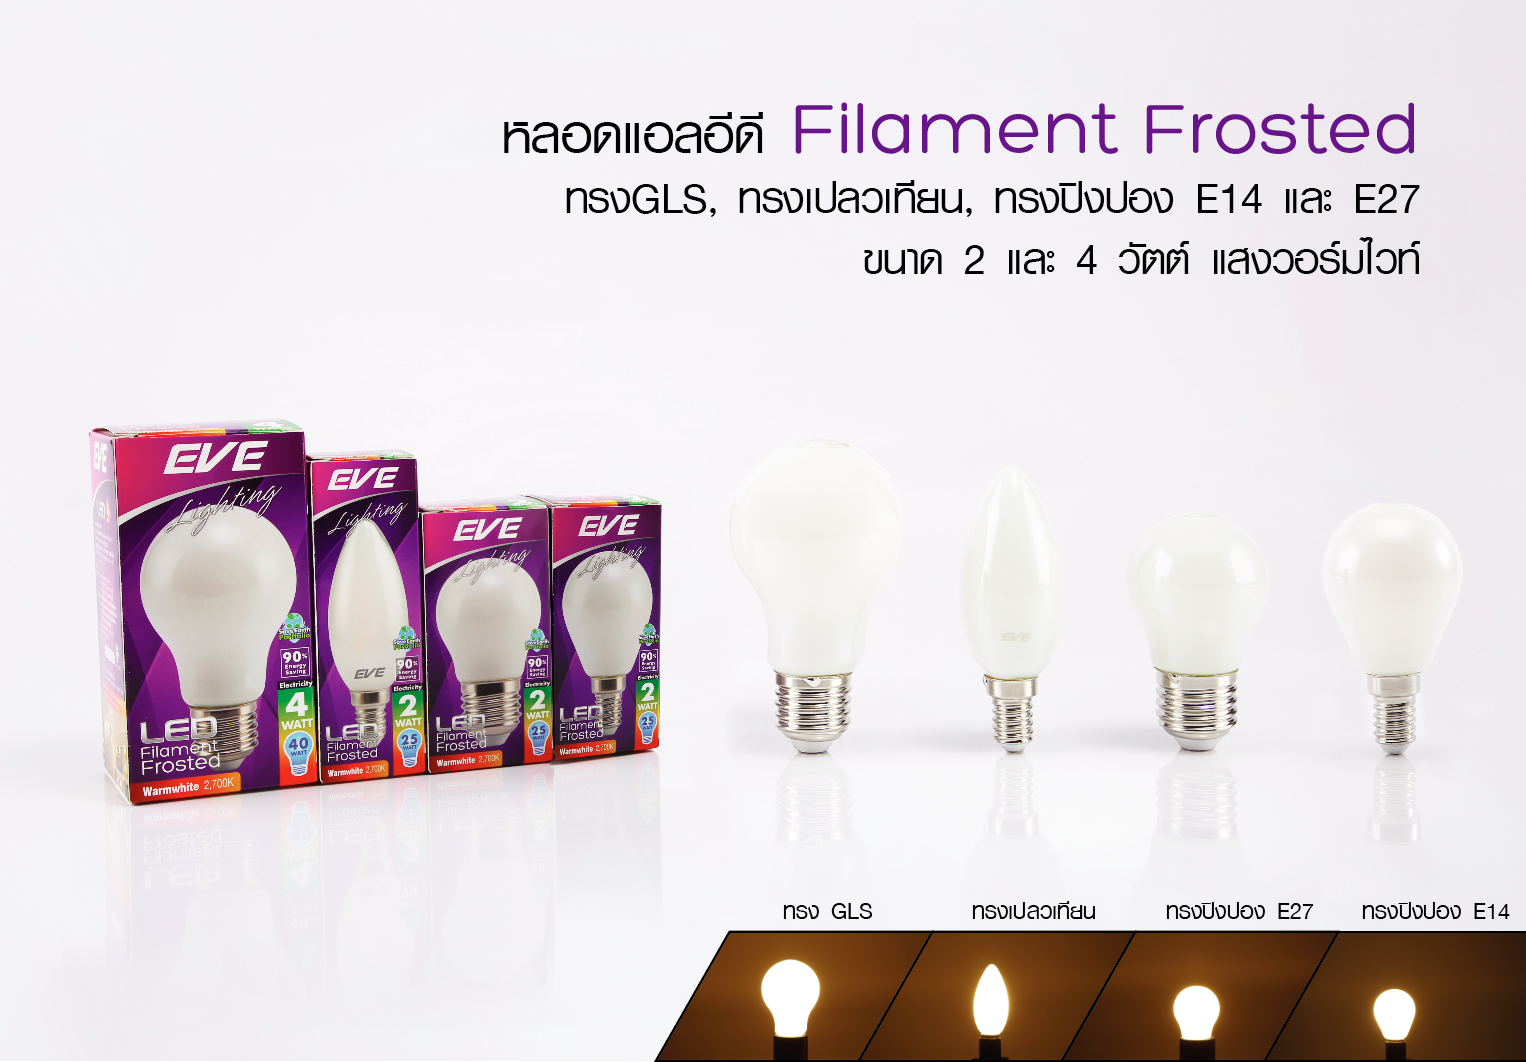 หลอดแอลอีดี ฟิลาเมนต์ แก้วขุ่น ขนาด 2 วัตต์ แสงเหลืองวอร์มไวท์ ขั้วE14 และ E27 แสงออกเต็มไม่เกิดเงาใต้หลอด LED Filament Frosted 2w E14/E27 